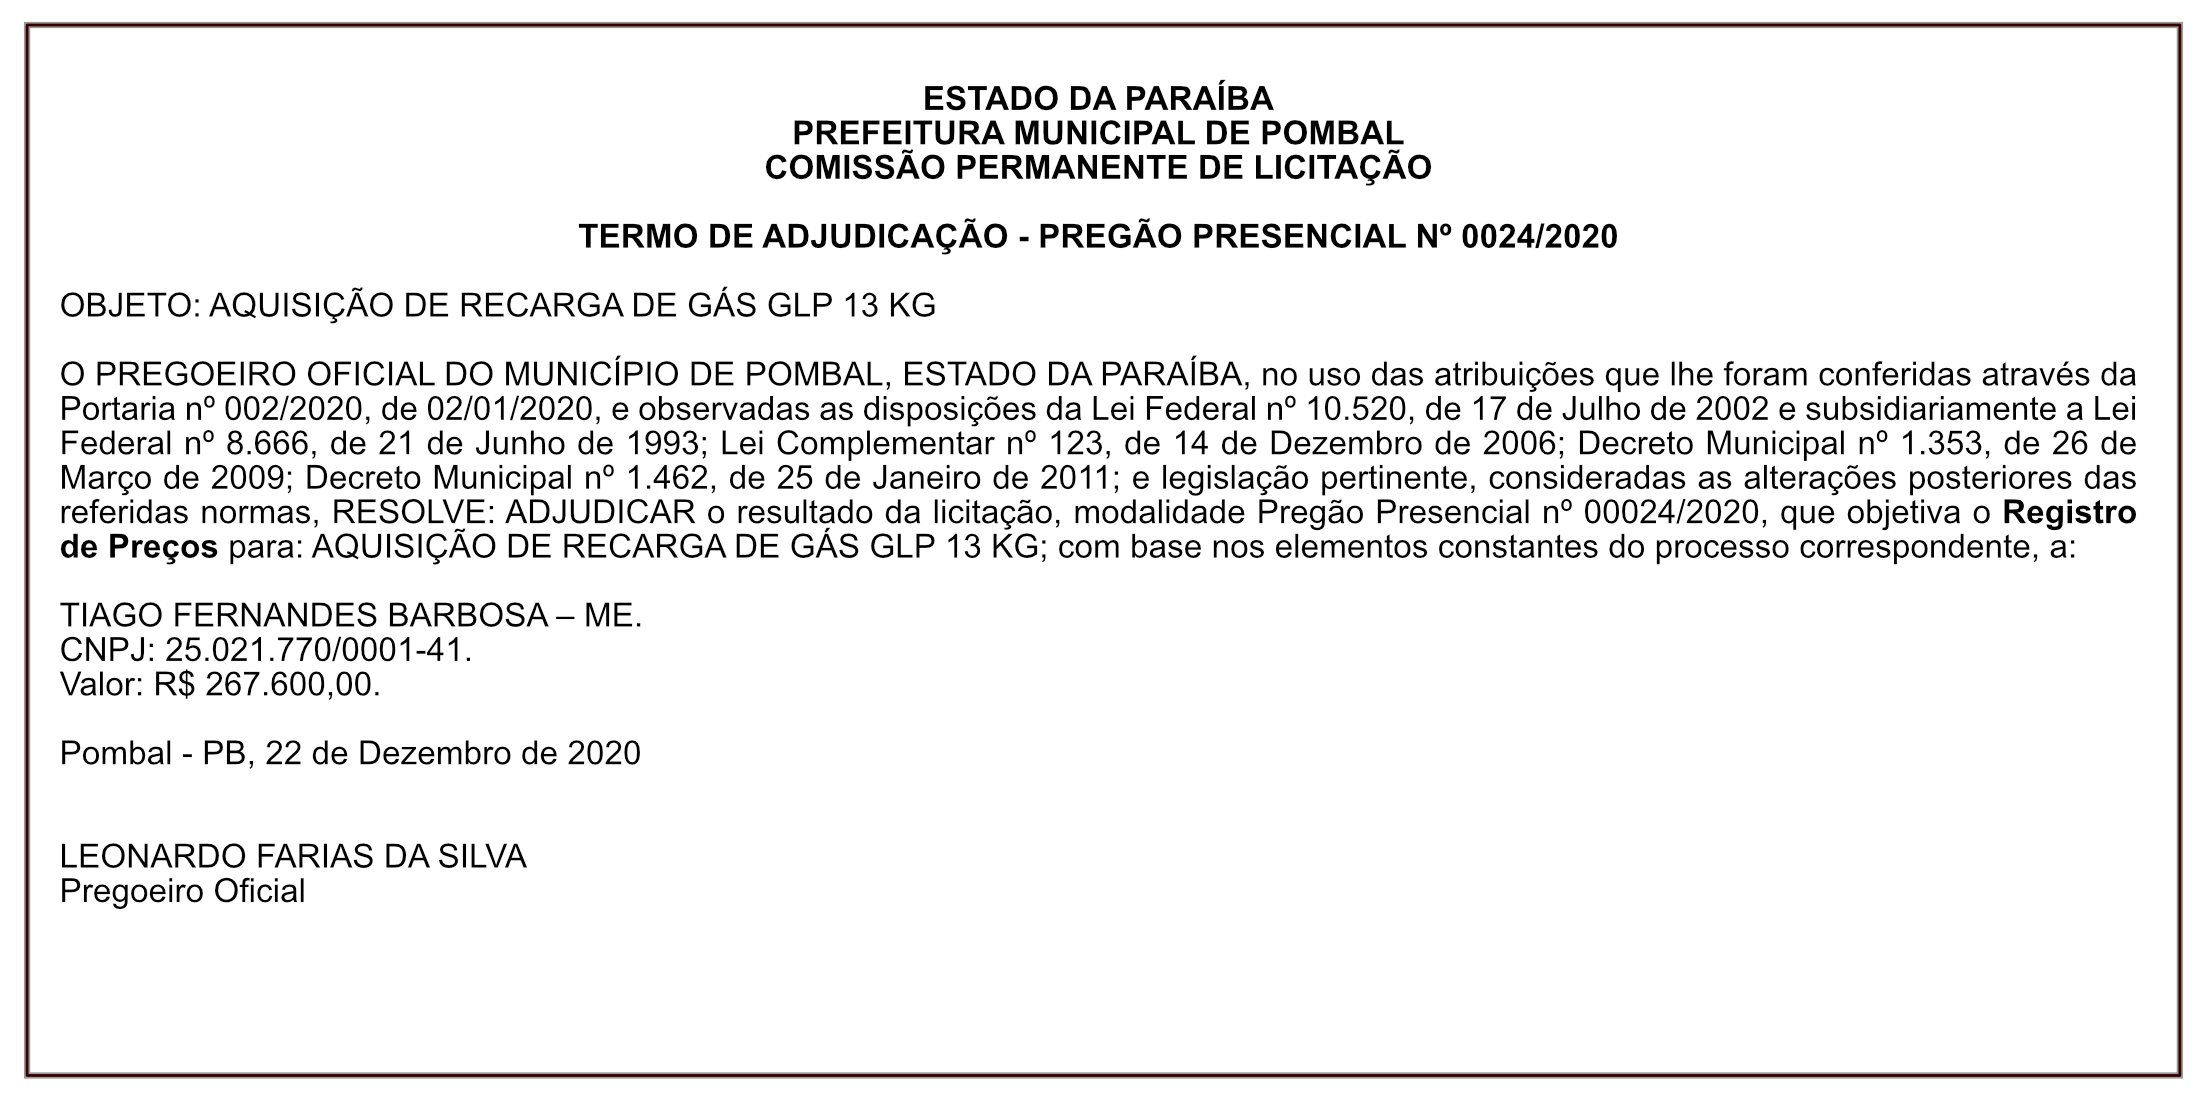 PREFEITURA MUNICIPAL DE POMBAL – TERMO DE ADJUDICAÇÃO – PREGÃO PRESENCIAL Nº 0024/2020